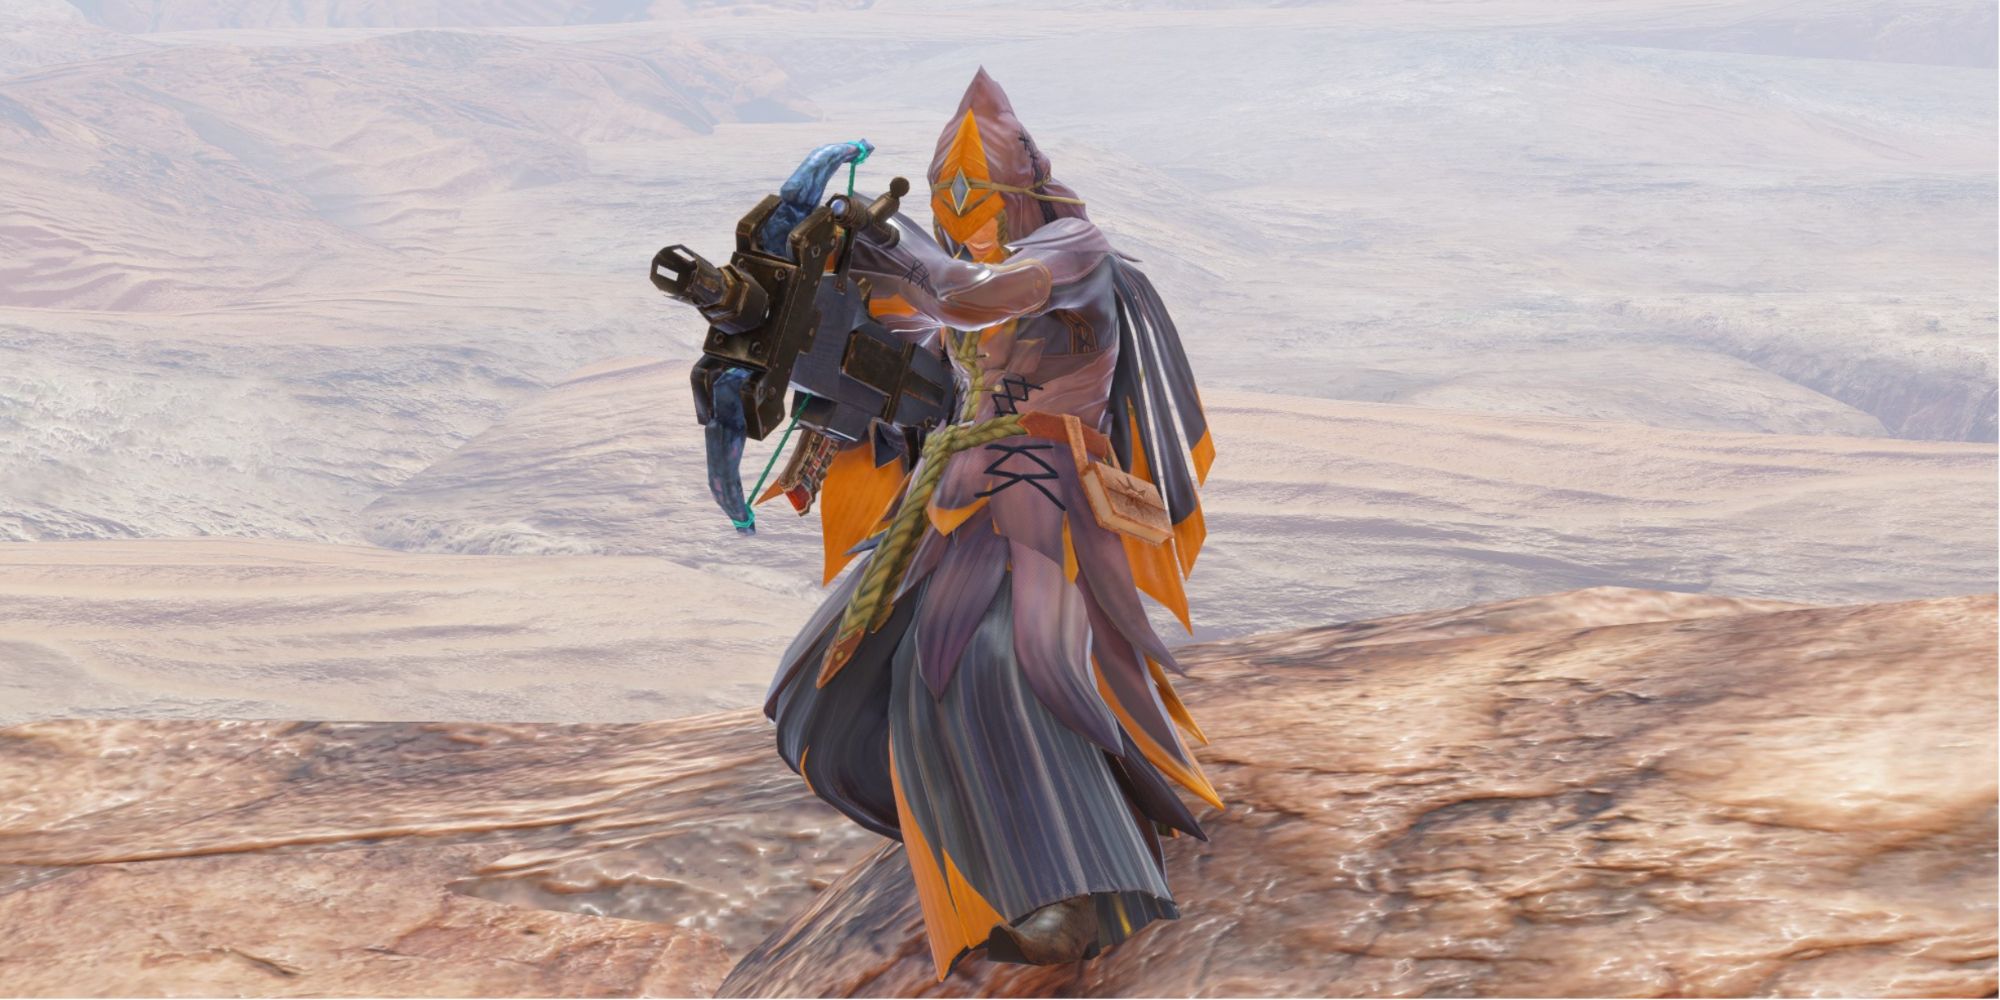 Monster Hunter Rise Light Bowgun Pose in the desert